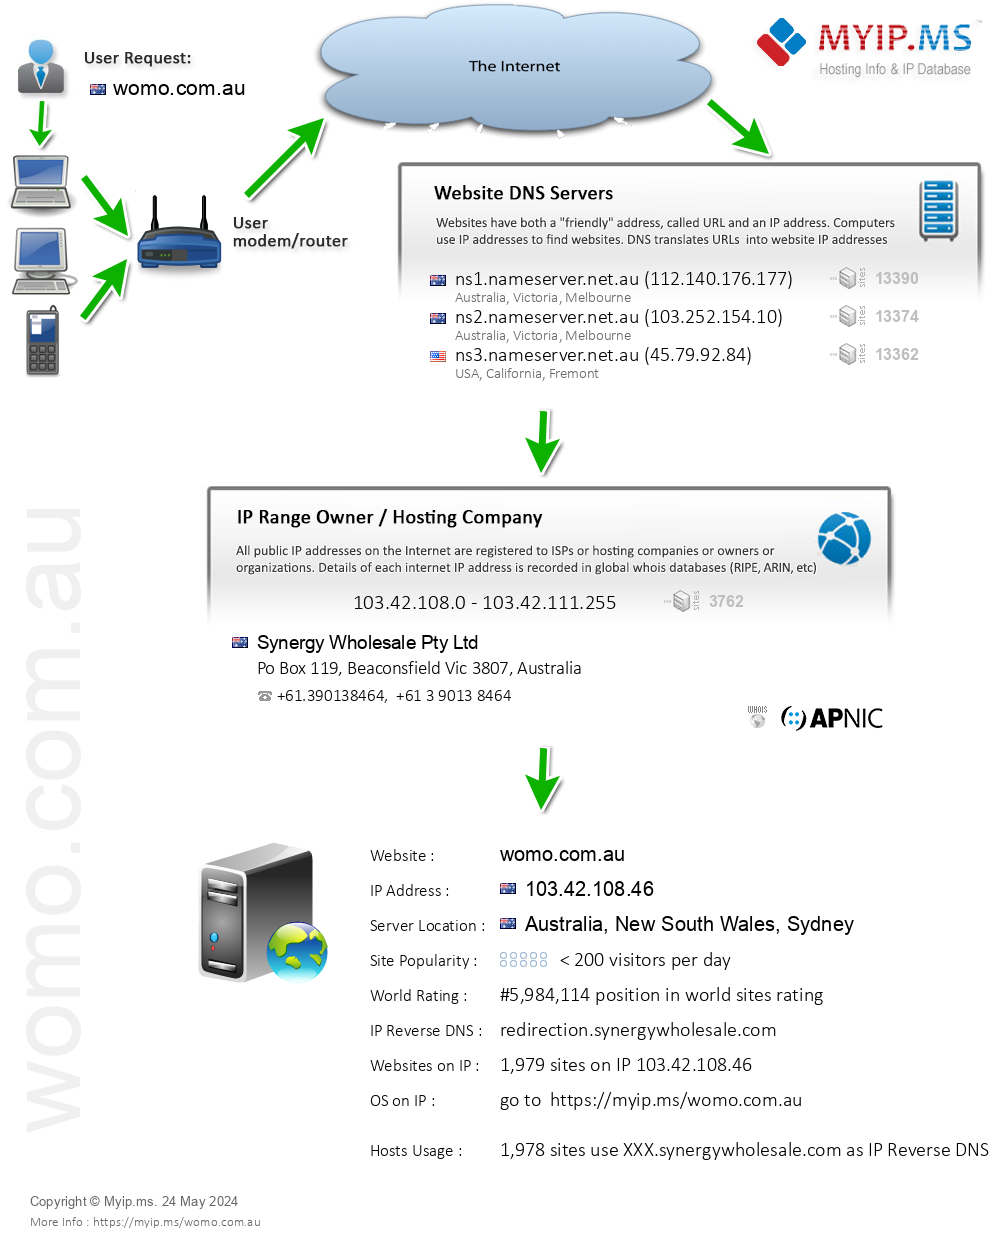 Womo.com.au - Website Hosting Visual IP Diagram